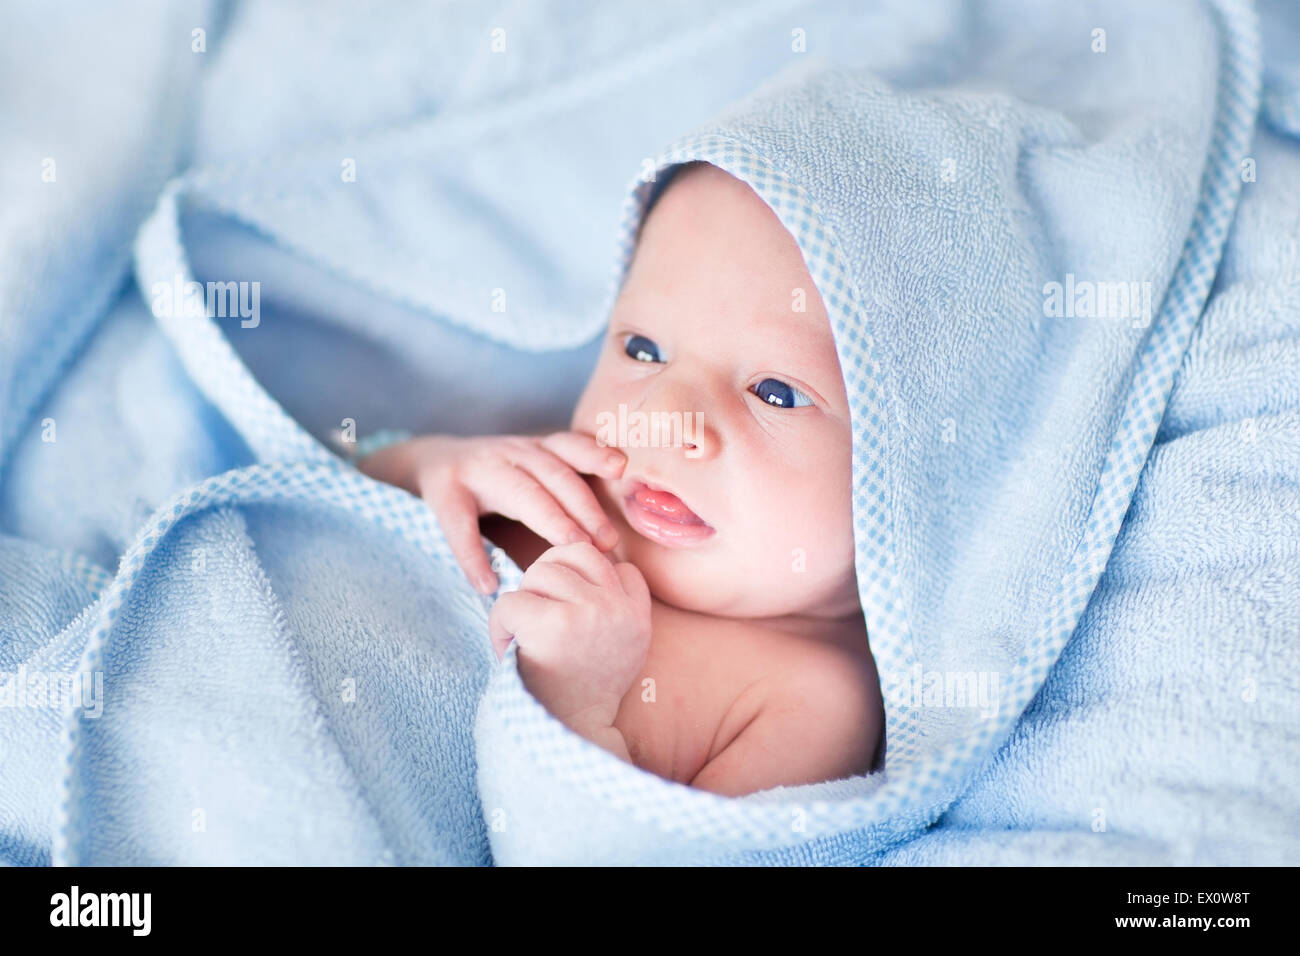 Dulce bebé recién nacido en una gran toalla azul después del baño Foto de stock